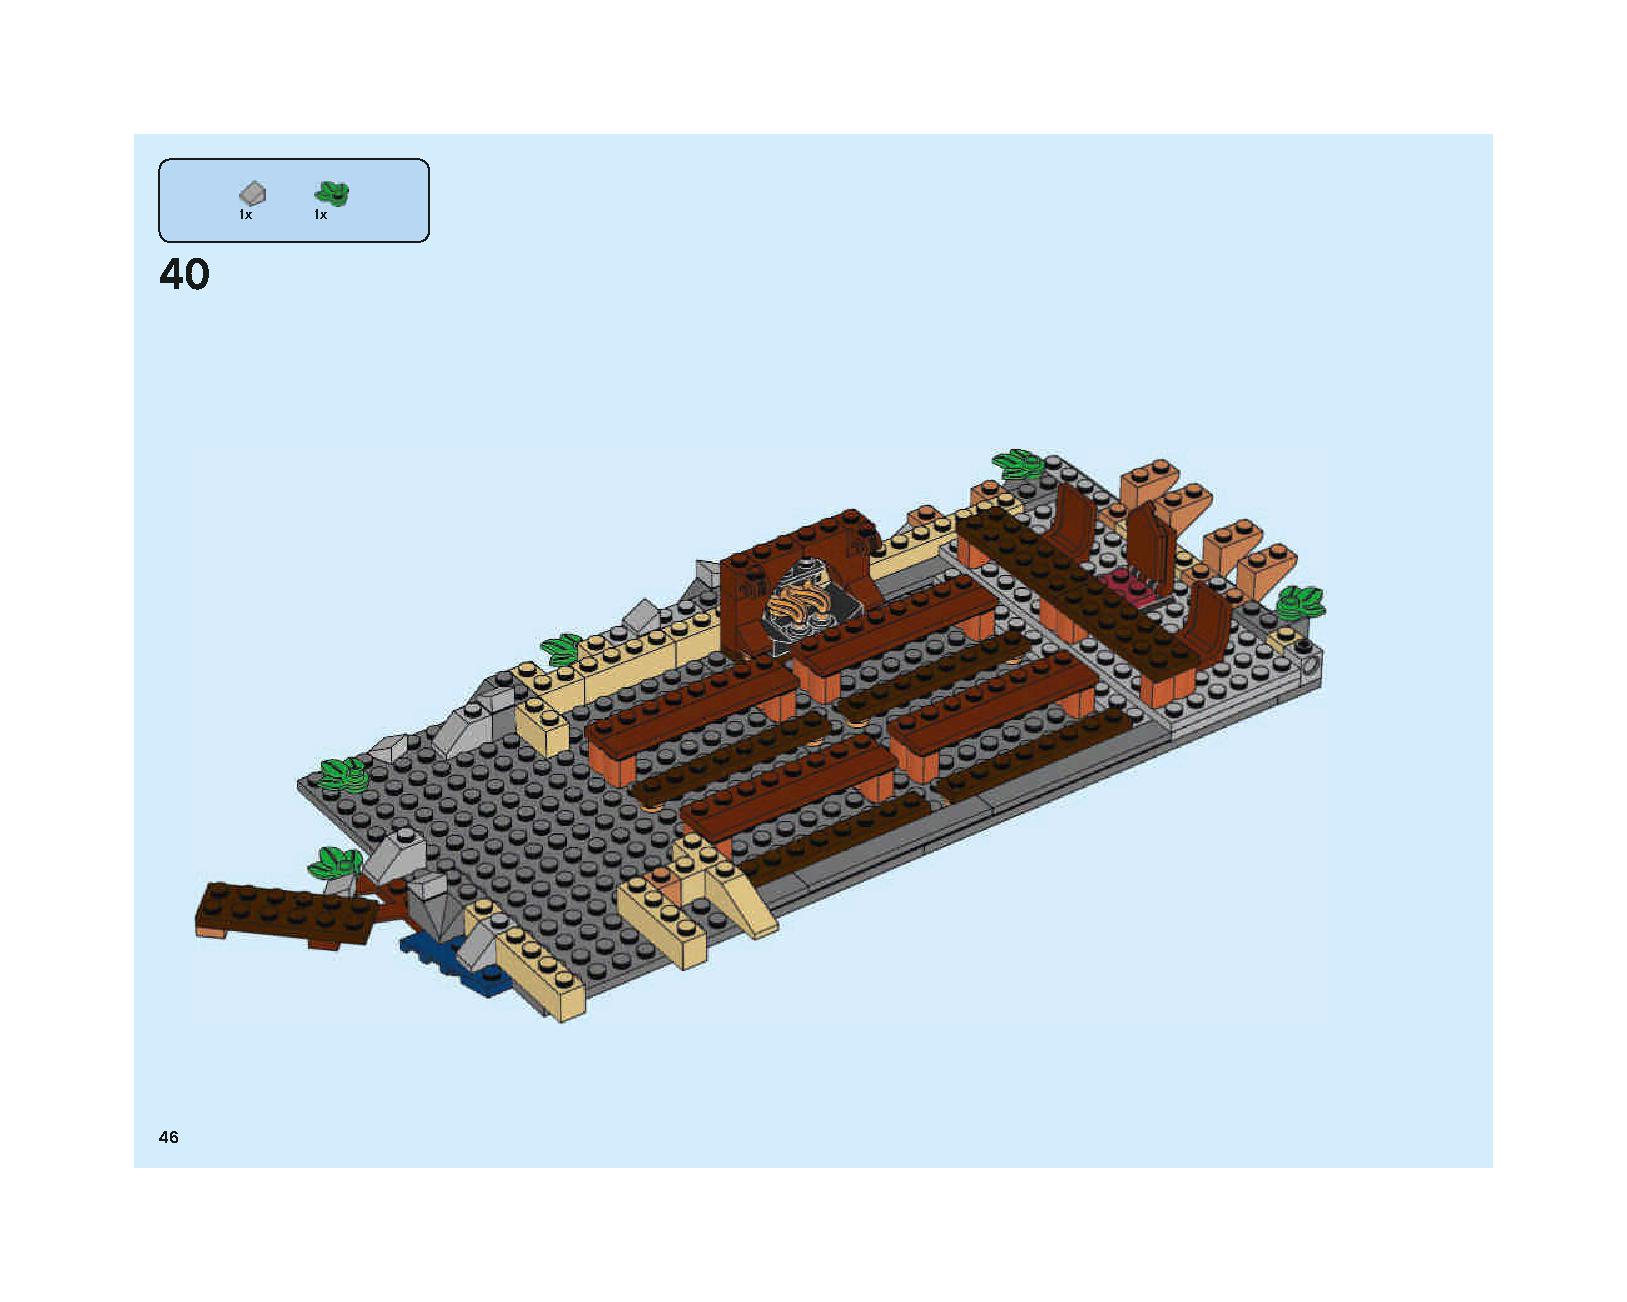 ホグワーツの大広間 75954 レゴの商品情報 レゴの説明書・組立方法 46 page